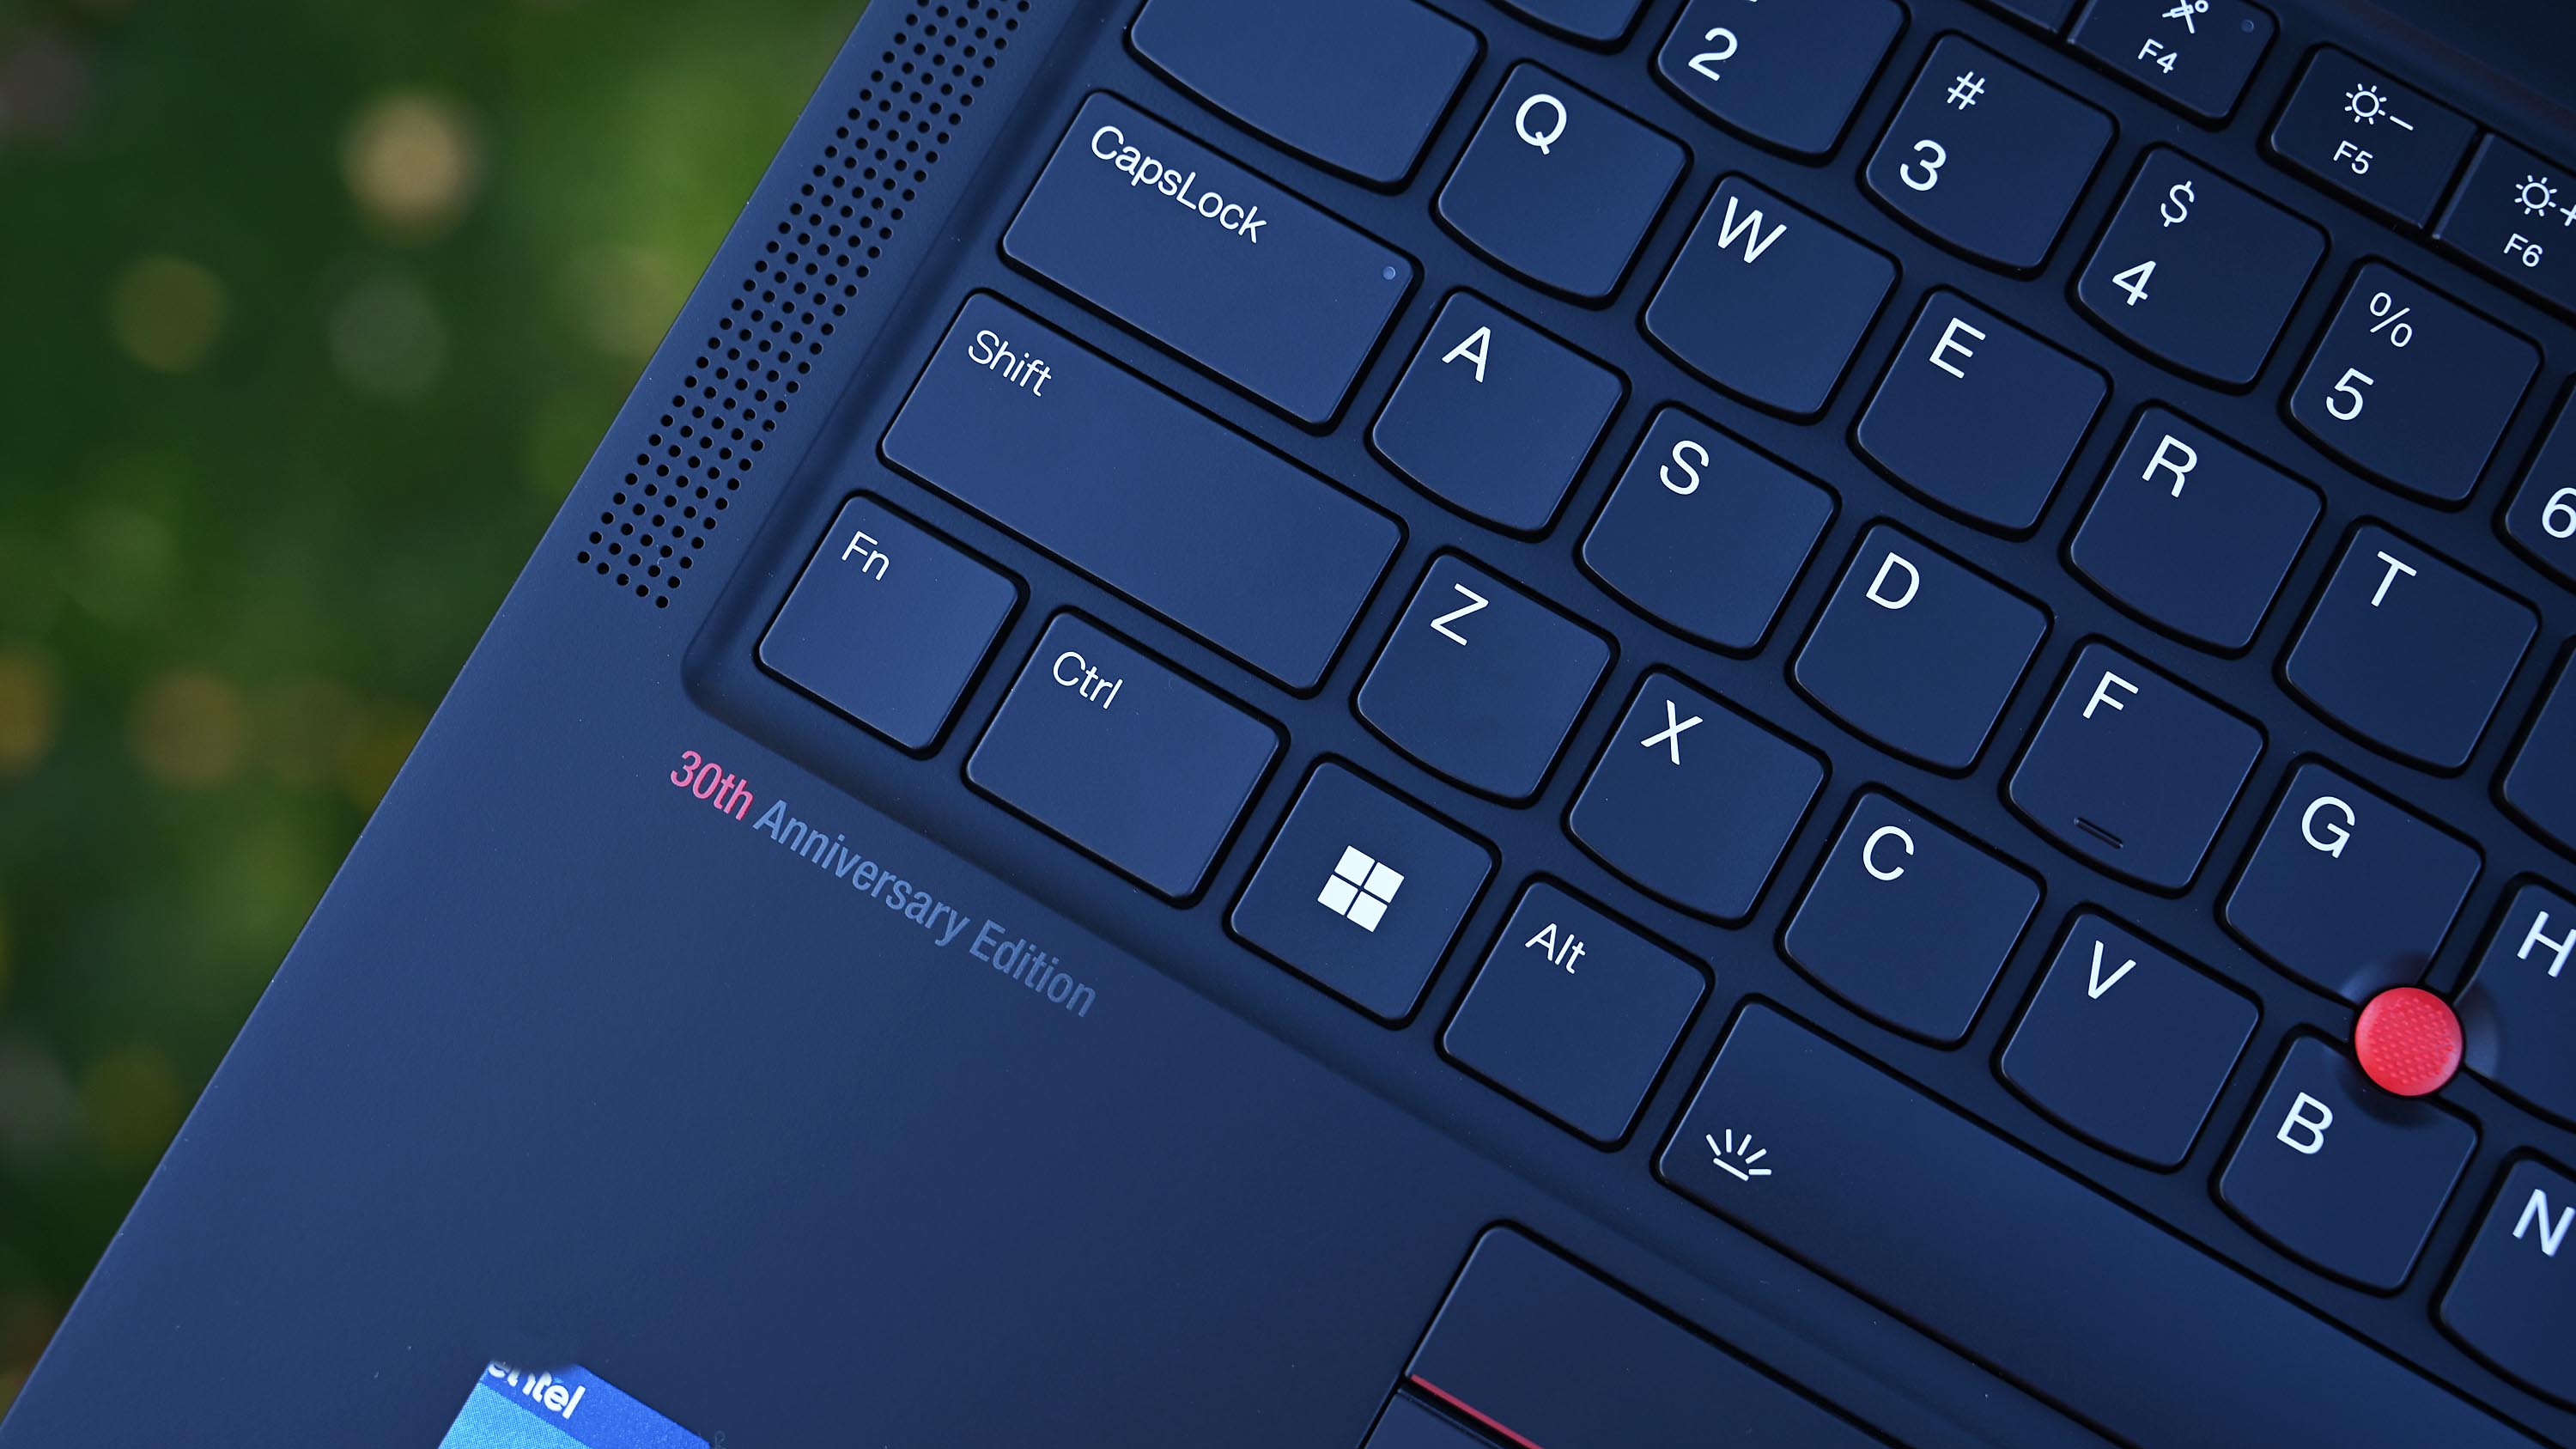 ThinkPad X1 Carbon 'Edición 30 aniversario'